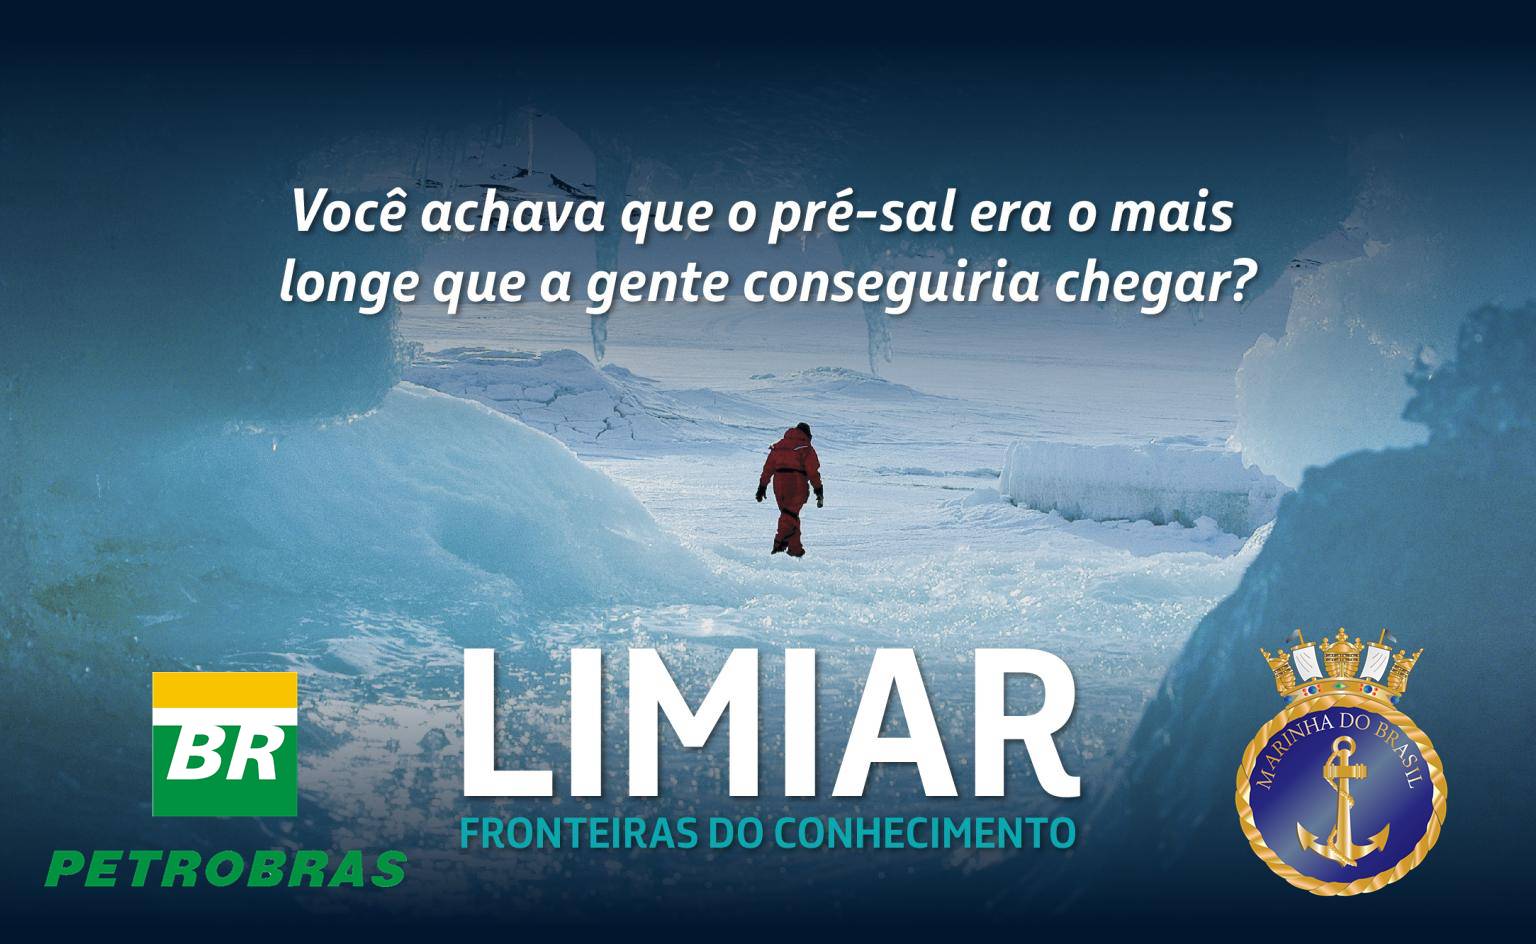 Petrobras e Marinha investem 400 milhões de reais em pesquisas na Estação Antártica Comandante Ferraz